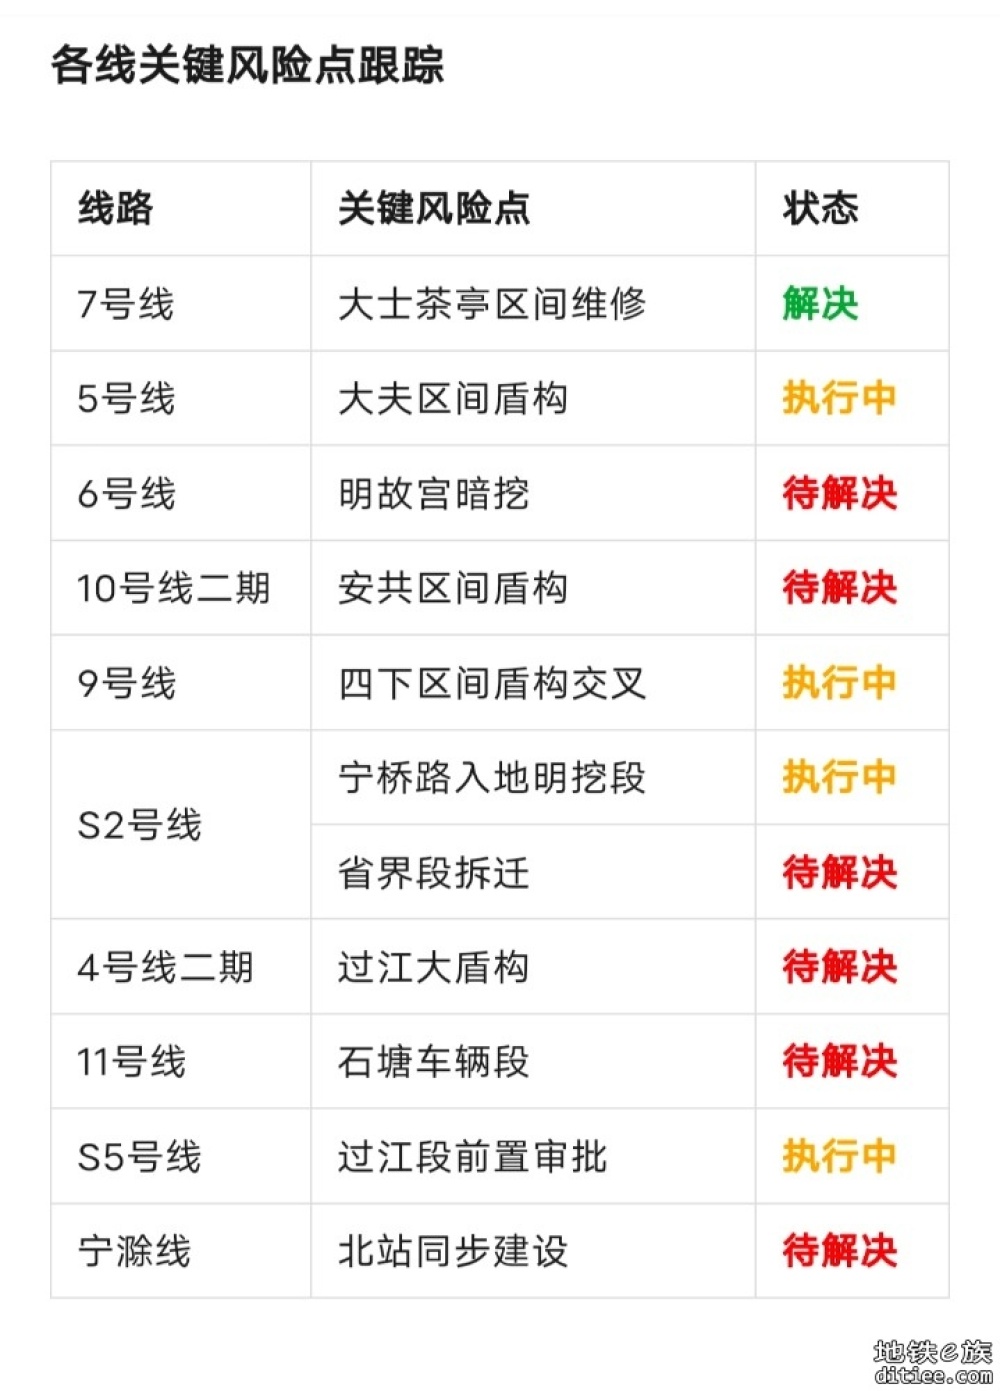 南京地铁12月建设进度小结